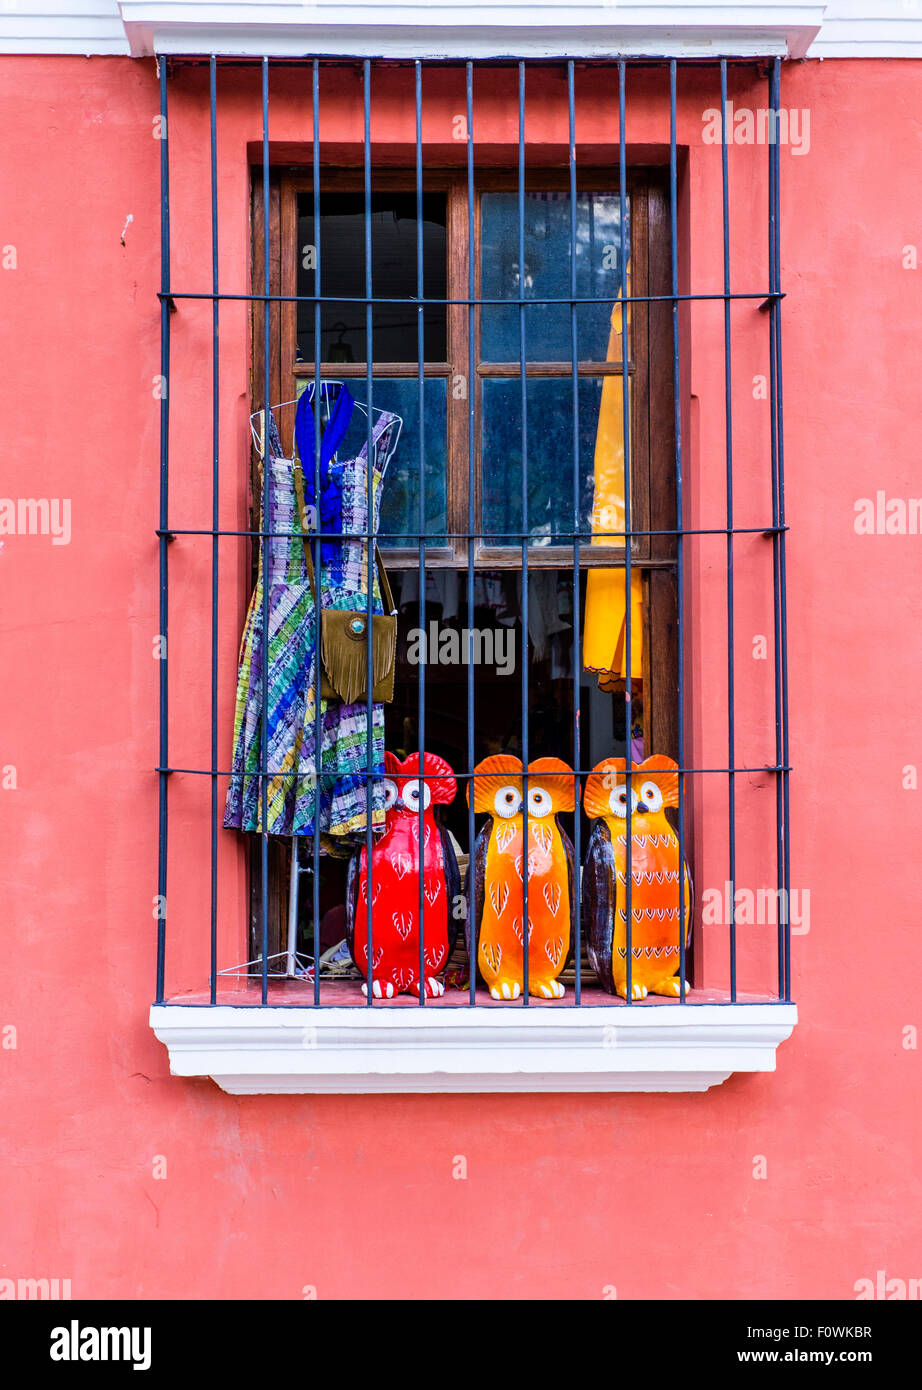 Dettagli architettonici in Antigua, Guatemala Foto Stock